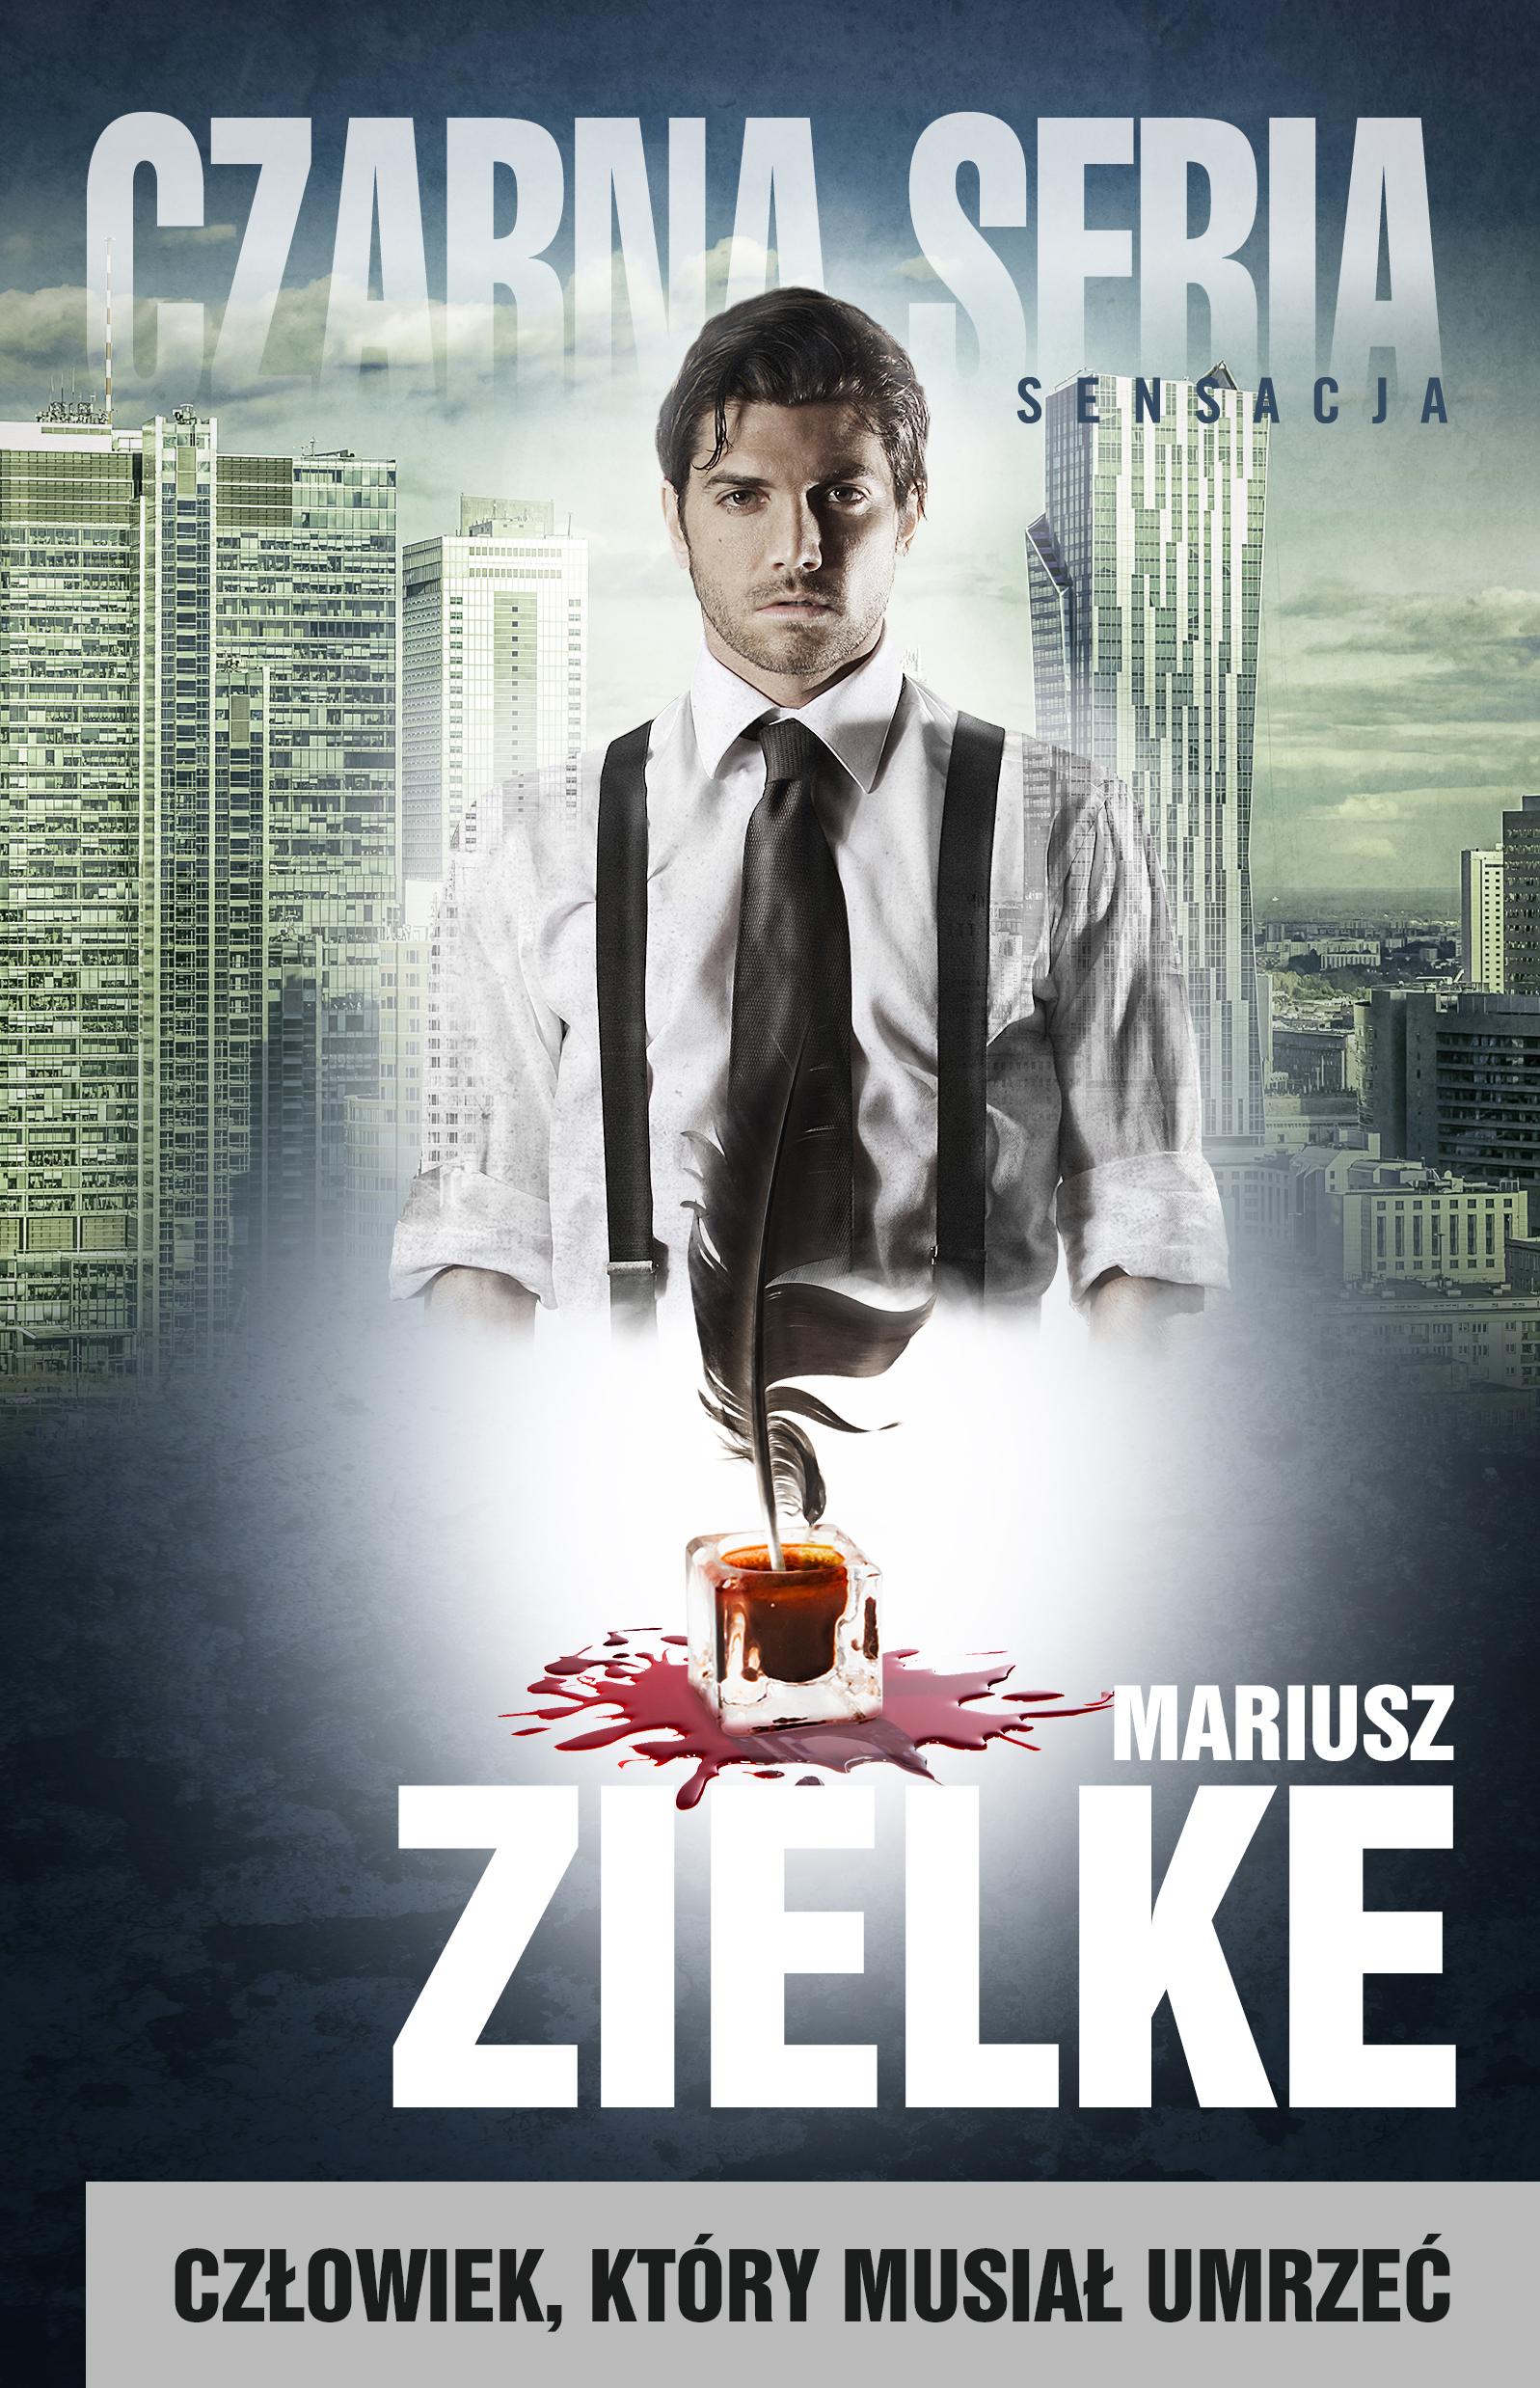 Mariusz Zielke - Człowiek, który musiał umrzeć (okładka)